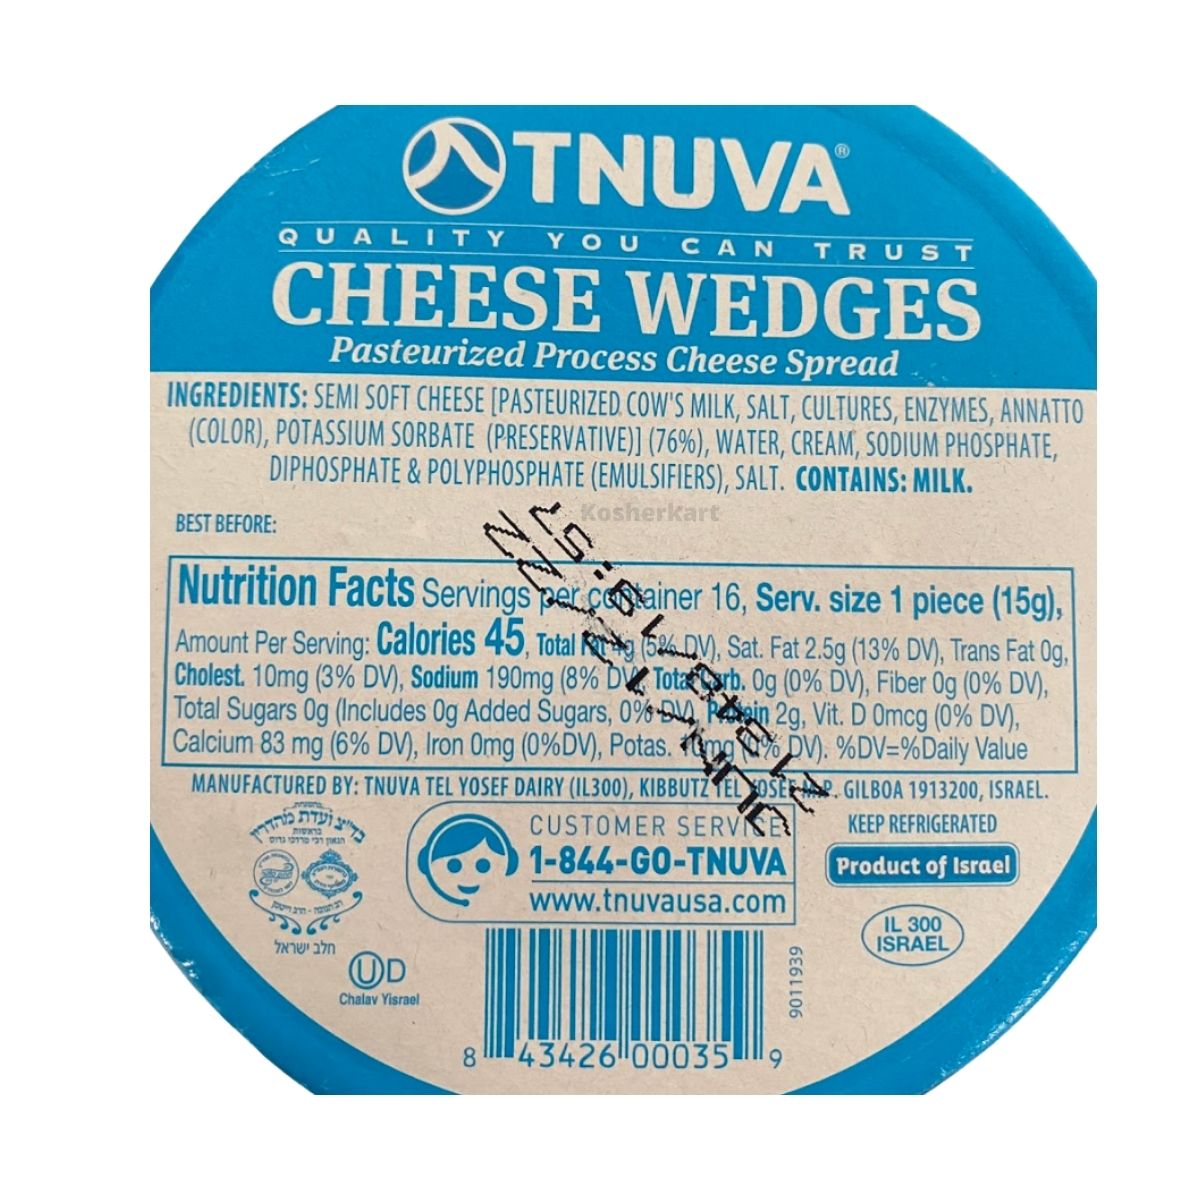 Tnuva Cheese Wedges 16 ct